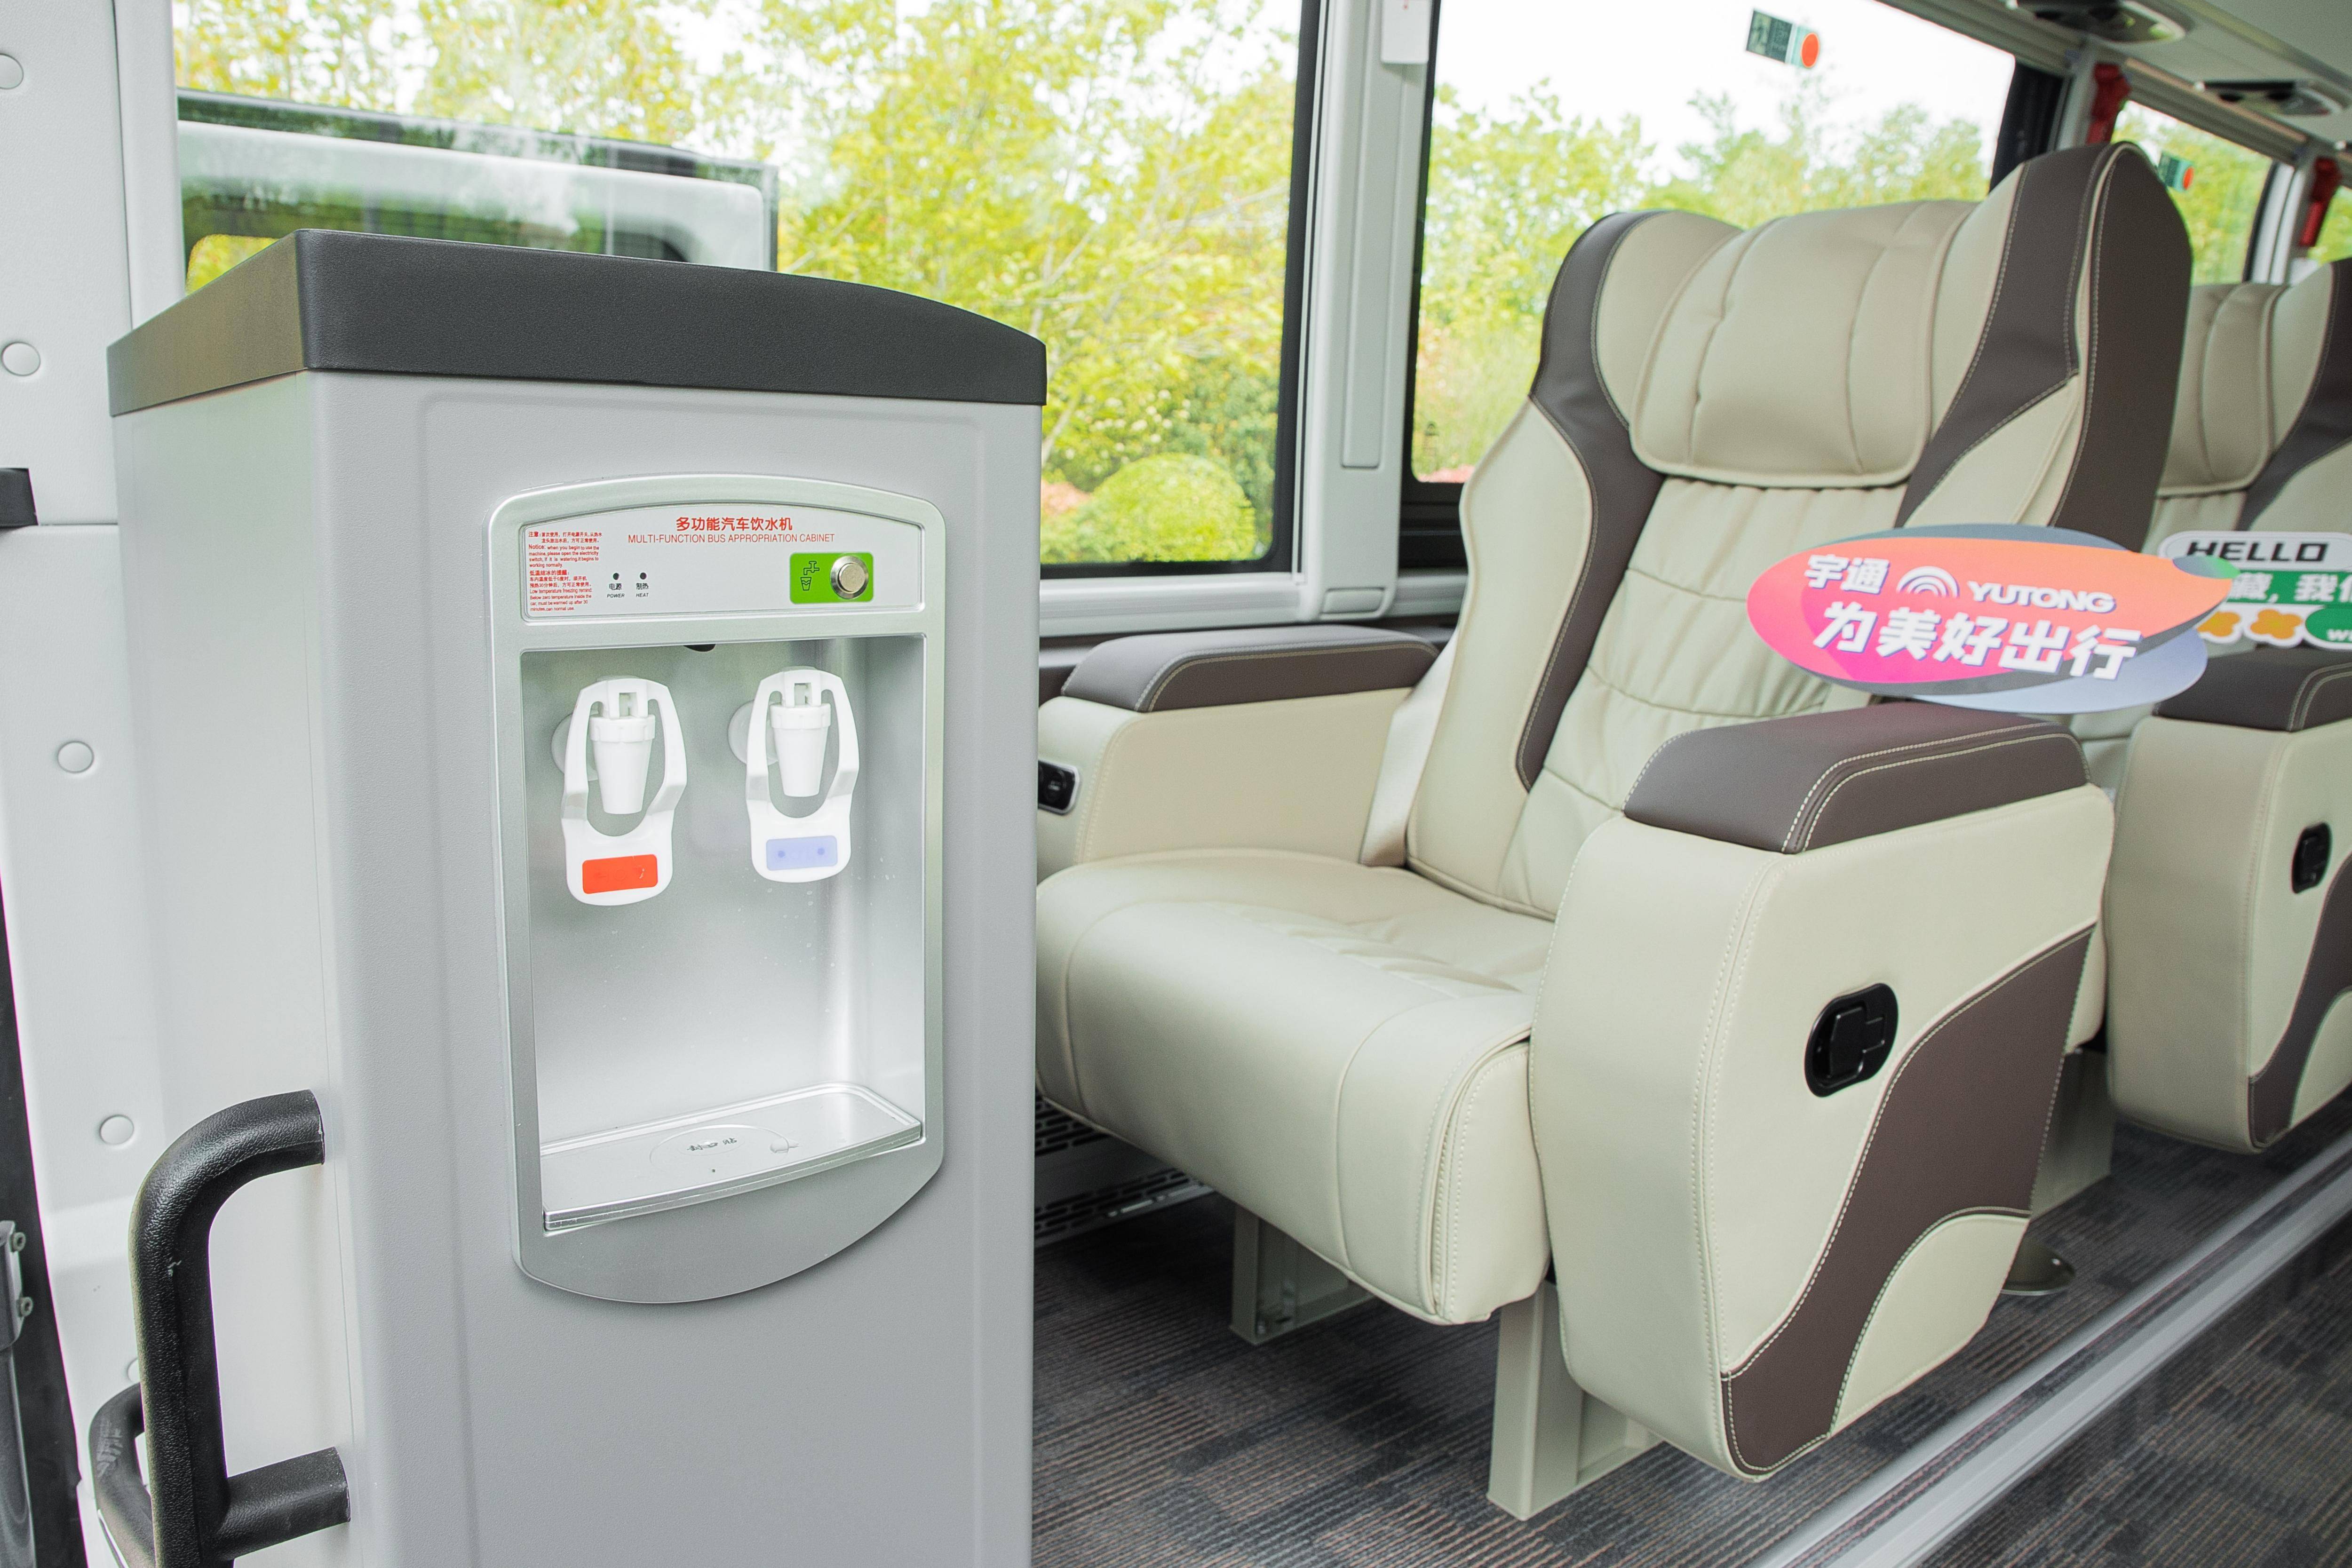 宇通c12l尊享版内部座位少了,订单多了,效益好了宇通高端旅游客车